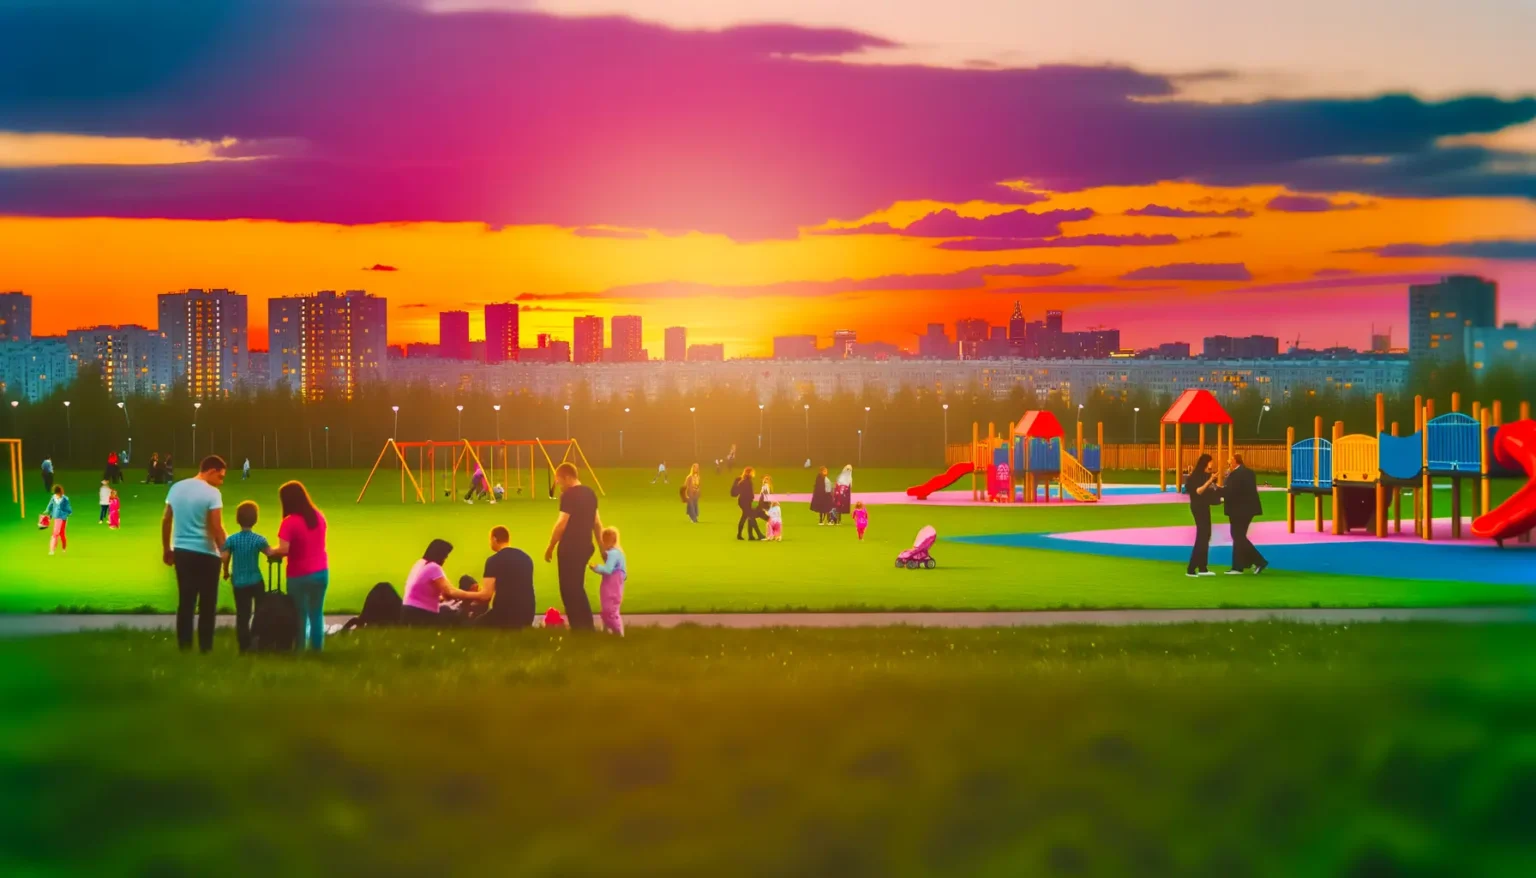 Lebendige Szene in einem städtischen Park bei Sonnenuntergang mit Menschen, die sich auf einem Spielplatz versammeln. Im Vordergrund spielen und interagieren Familien auf einem grünen Rasen, während im Mittelgrund Spielgeräte zu sehen sind. Im Hintergrund erstreckt sich eine beeindruckende Stadtansicht unter einem dramatischen, orangefarbenen und violetten Himmel.